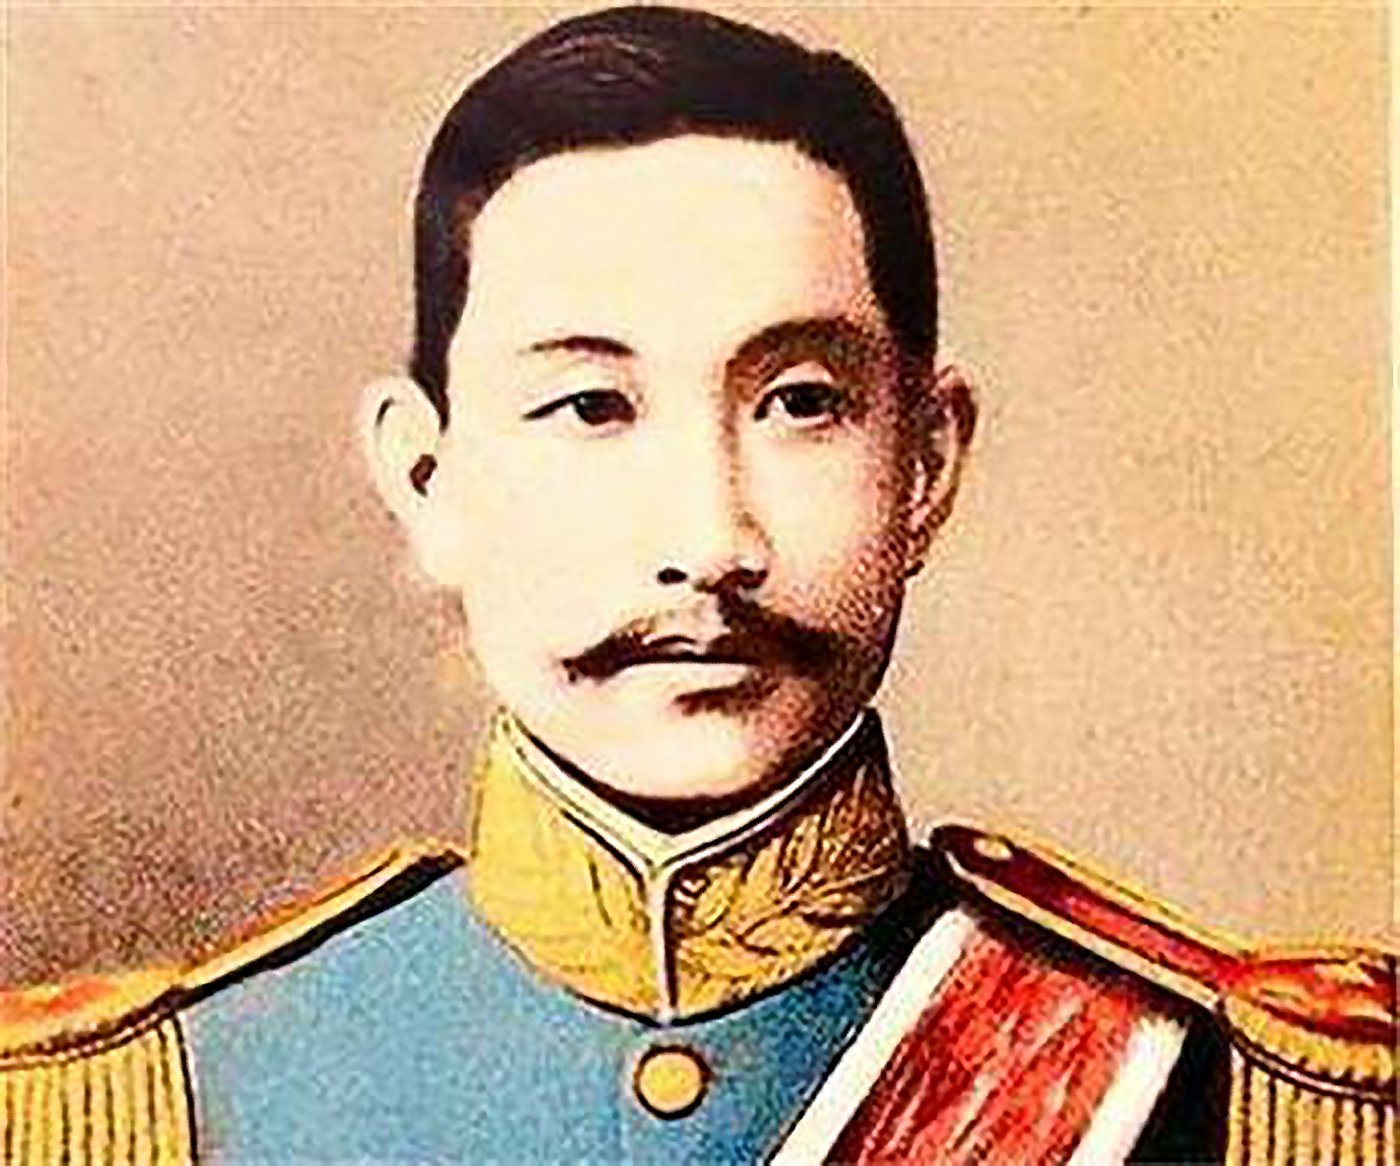 圖 『星座物語』12月18日出生  蔡鍔將軍  翻拍自網路